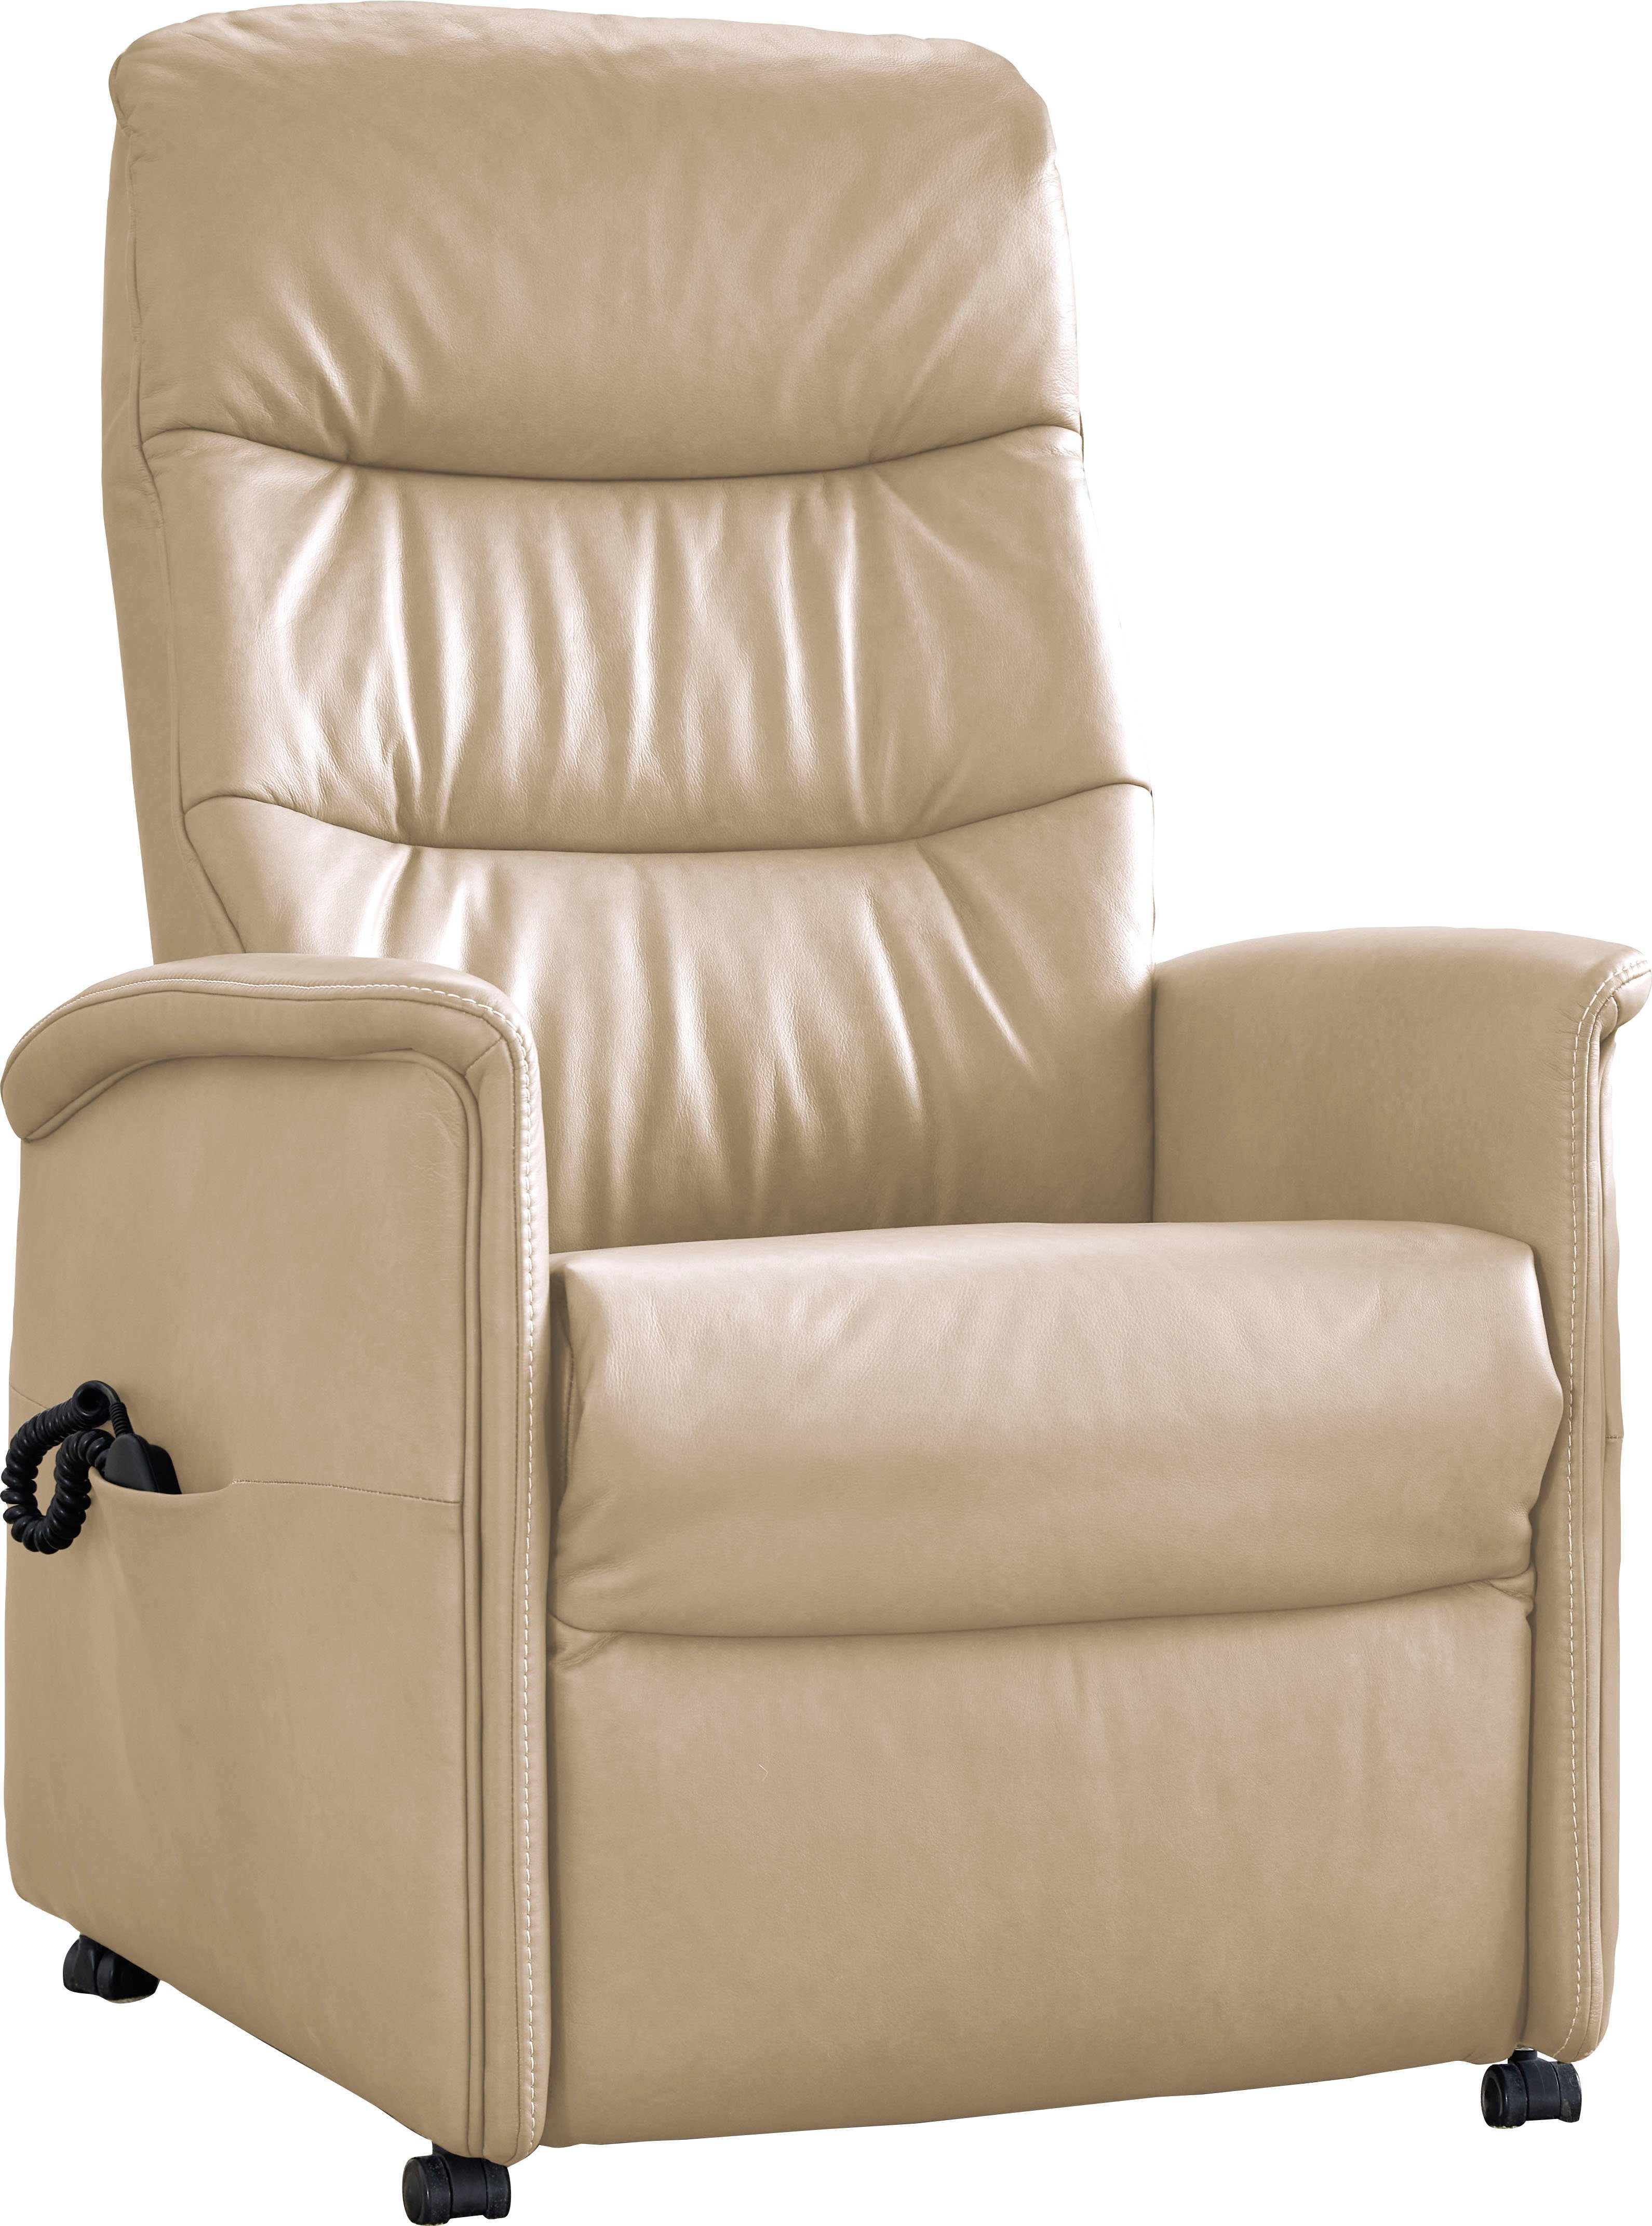 himolla Relaxsessel himolla 9051, in 3 Sitzhöhen, manuell oder elektrisch verstellbar, Aufstehhilfe | Sessel